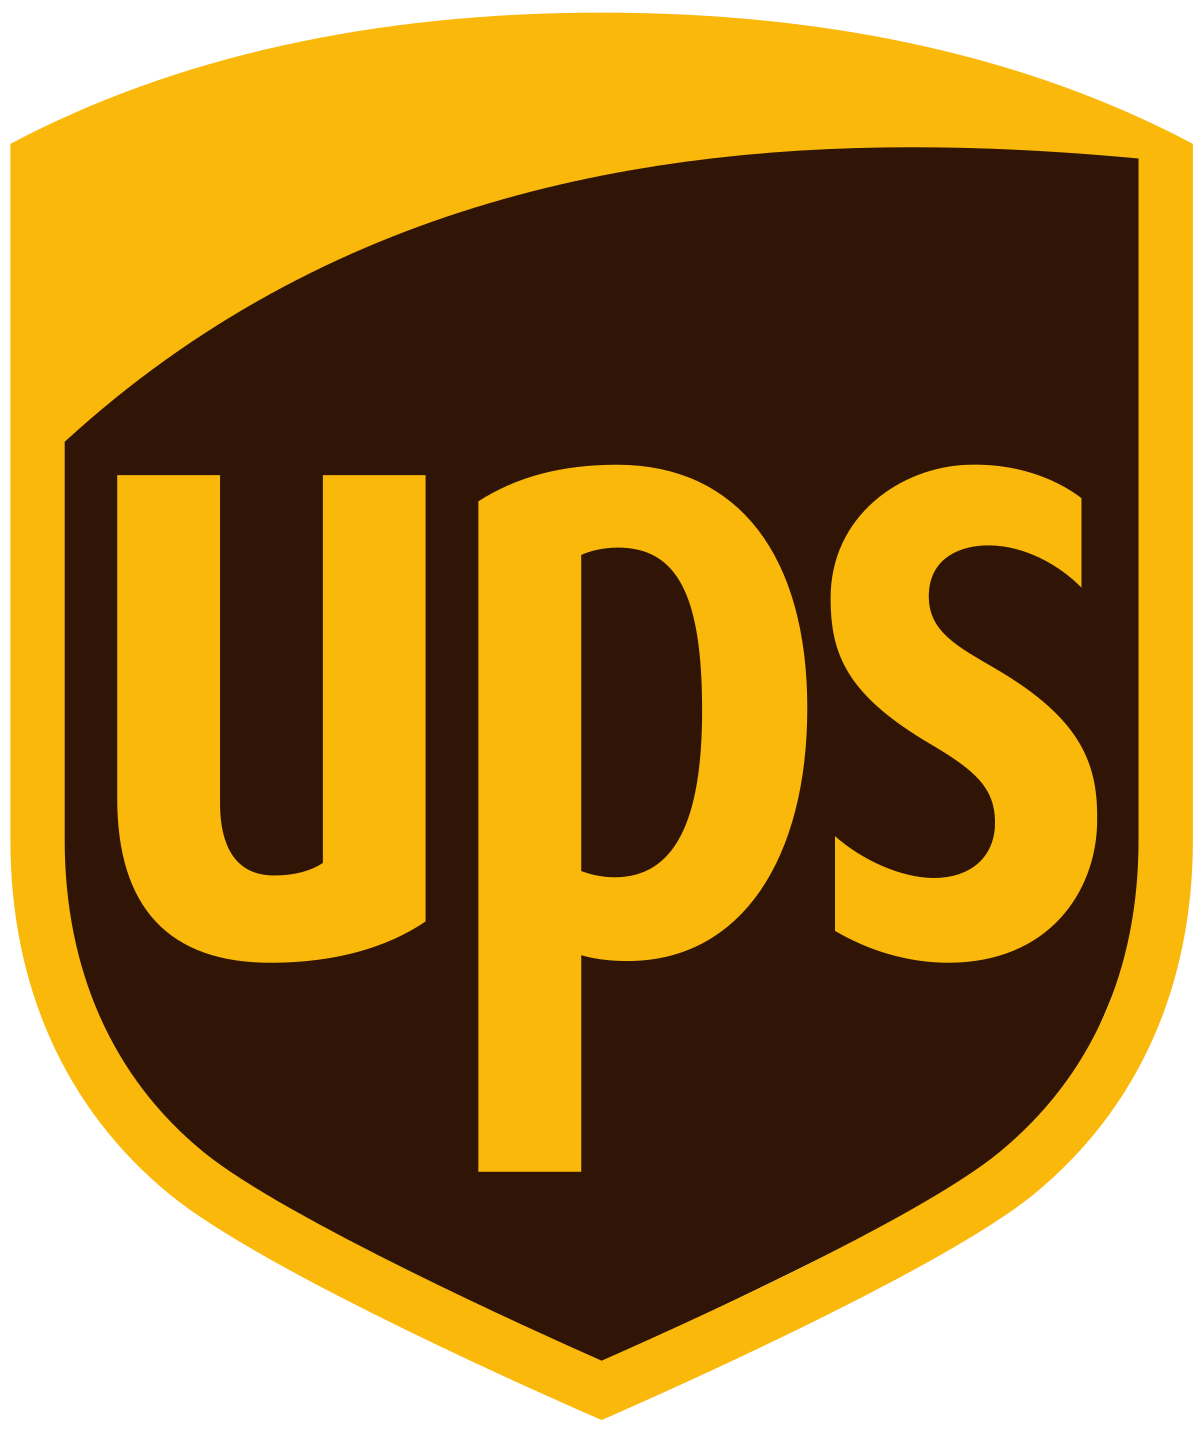 UPS Germany